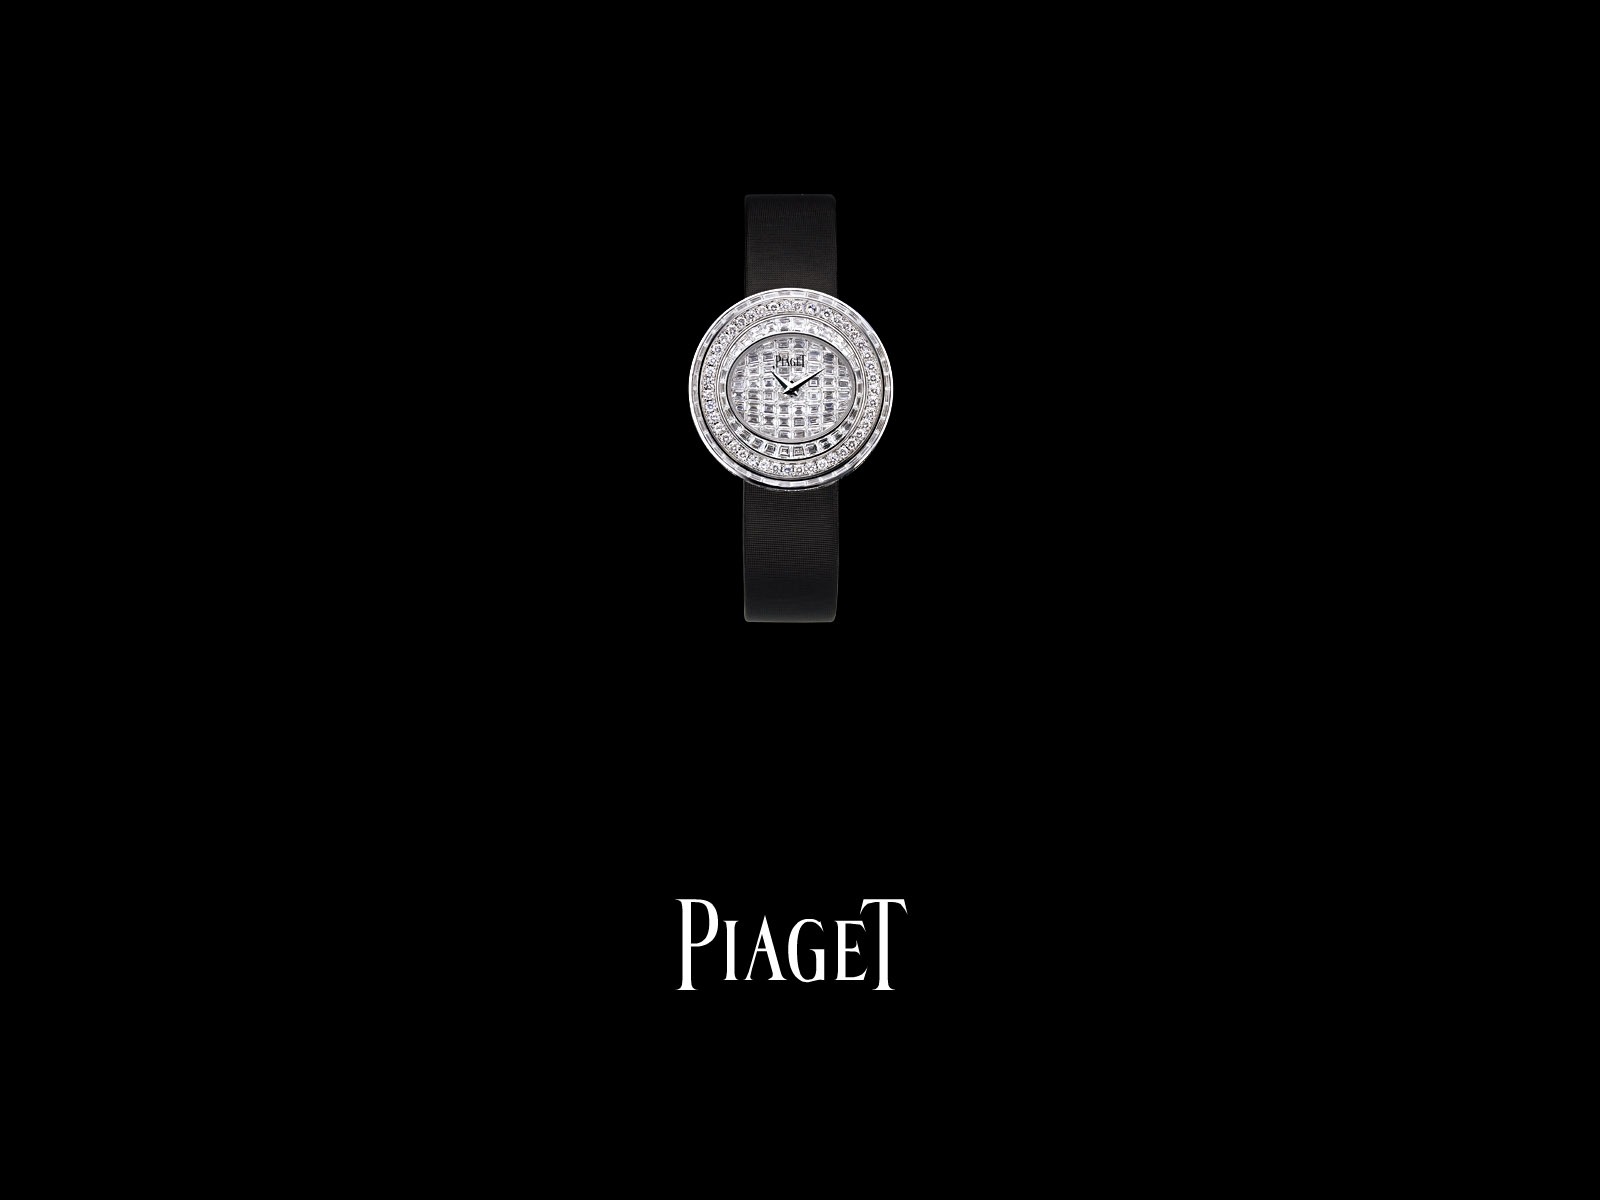 Piaget Diamante fondos de escritorio de reloj (1) #15 - 1600x1200